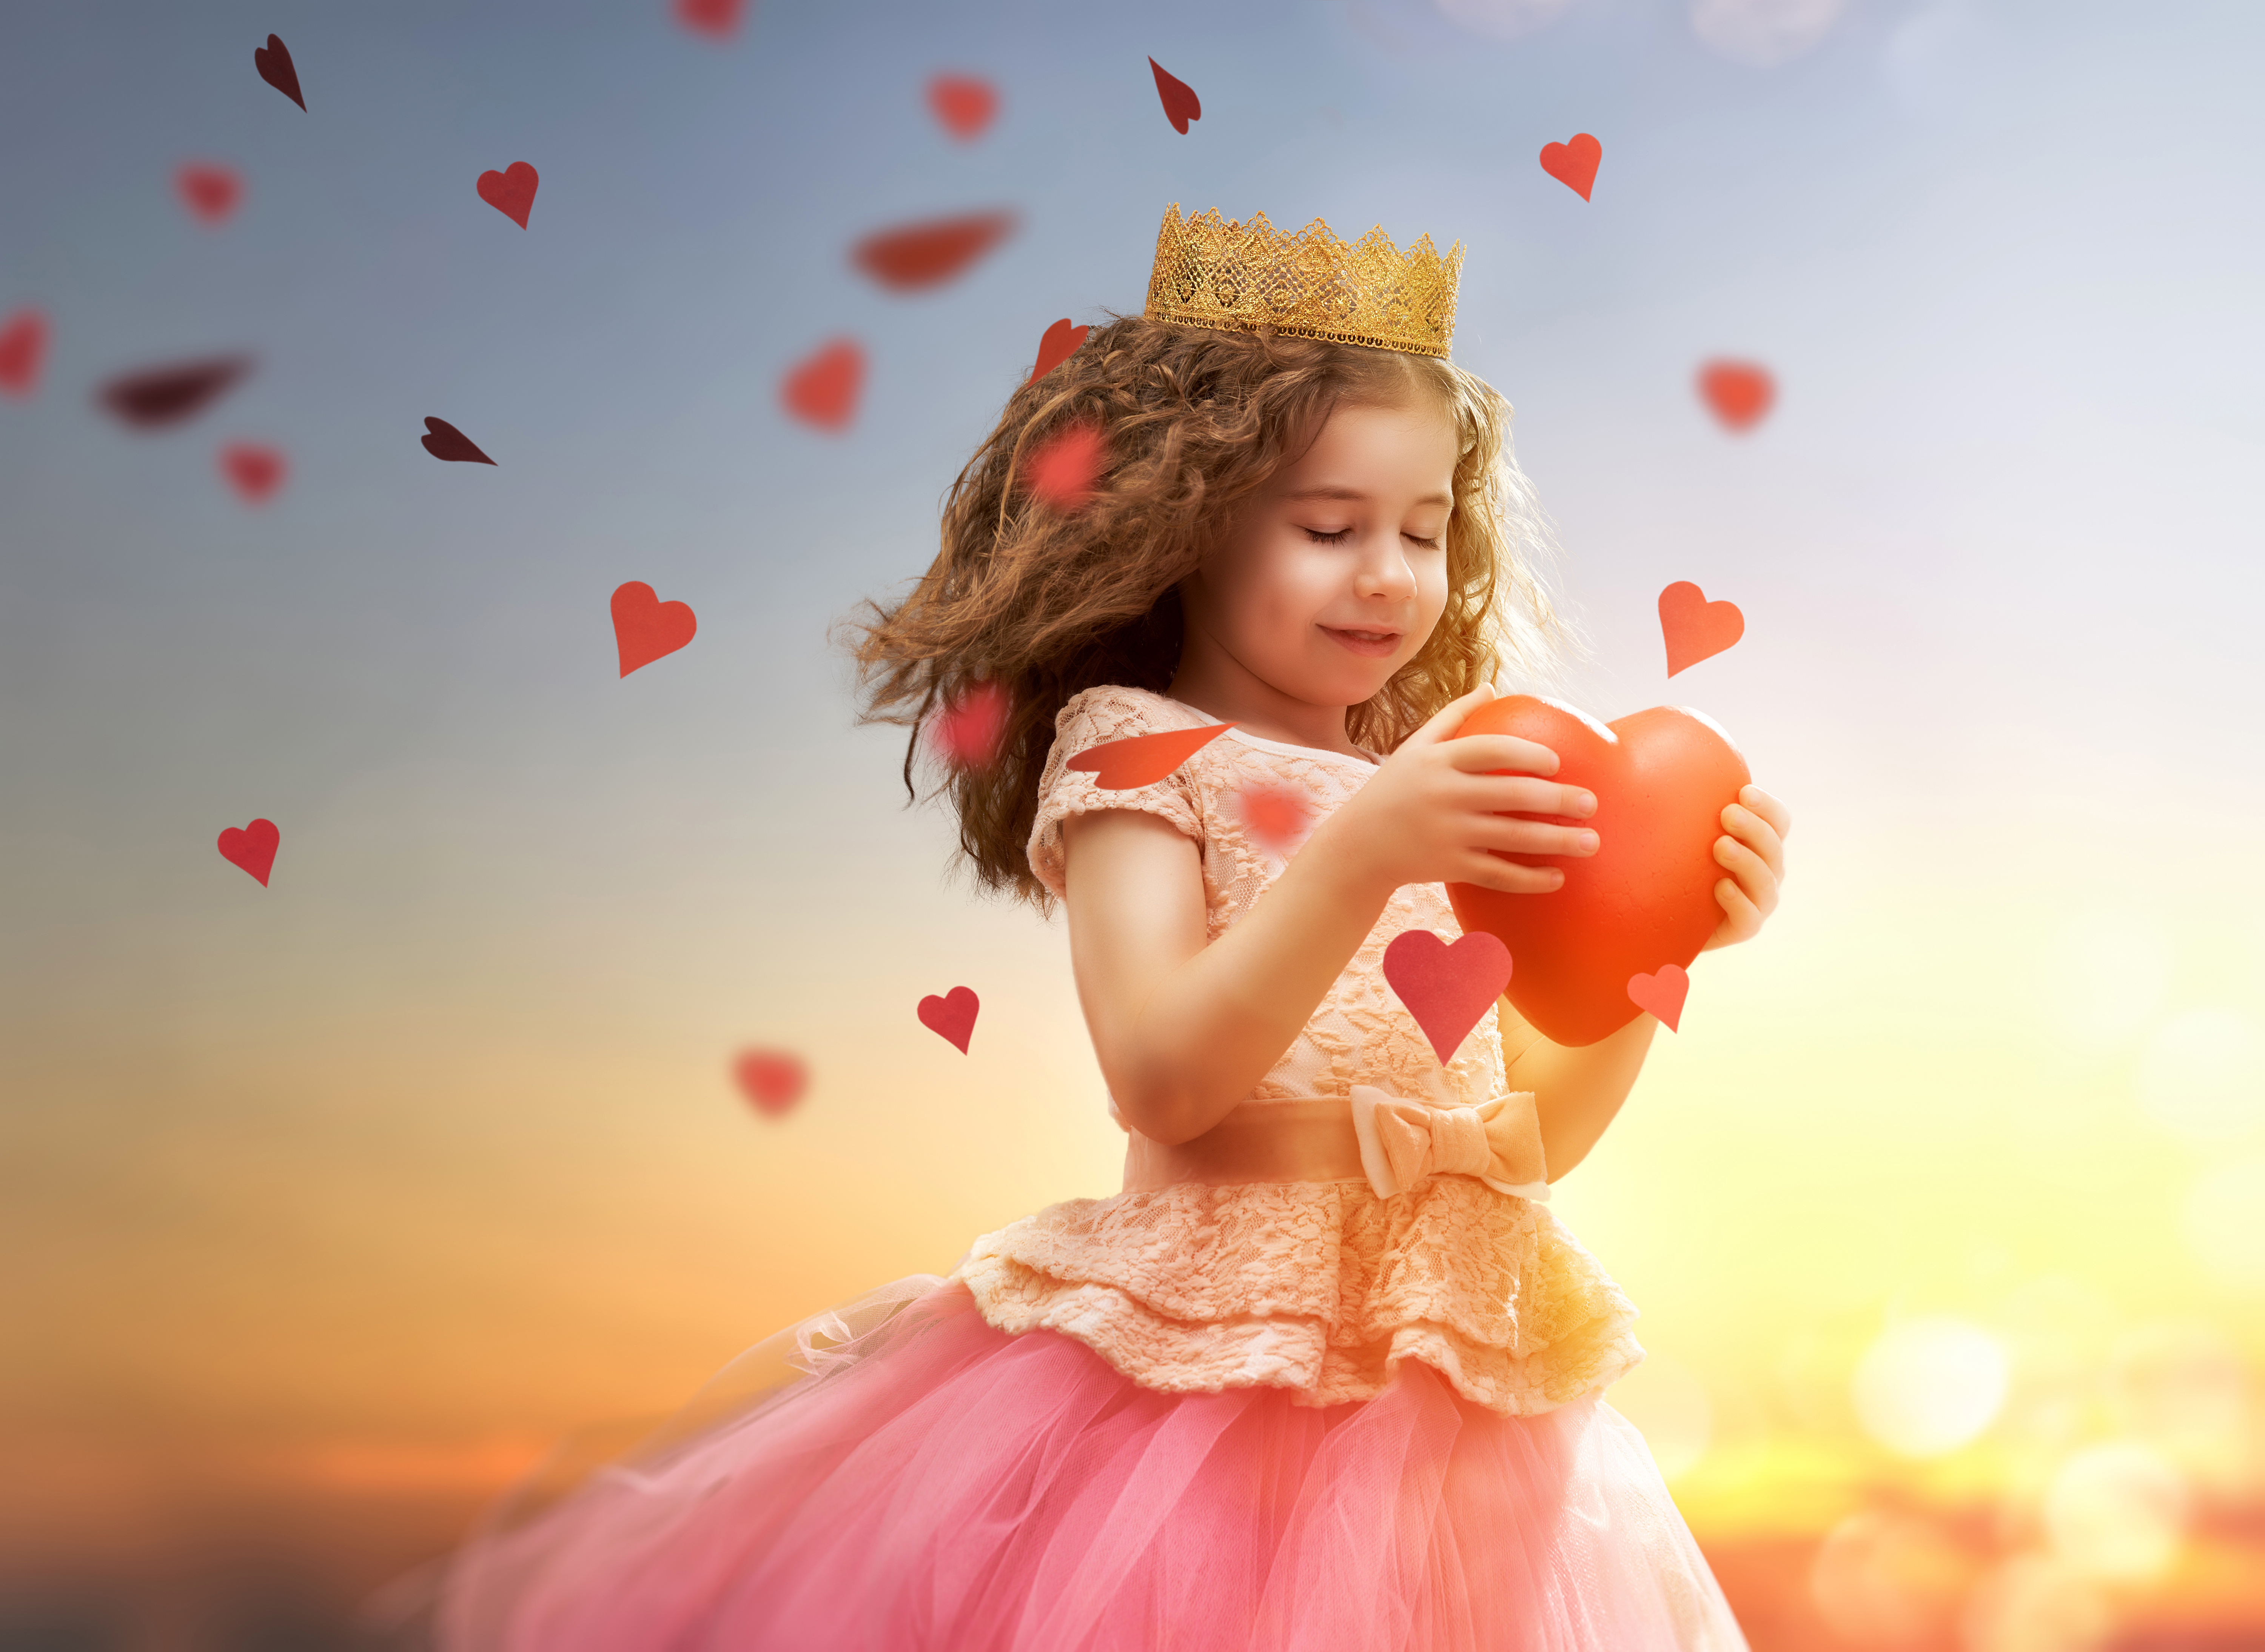 Я люблю маленьких девочек. Счастливая девочка. Девочка принцесса. Девочка с сердечком в руках. Сердце для девочки.